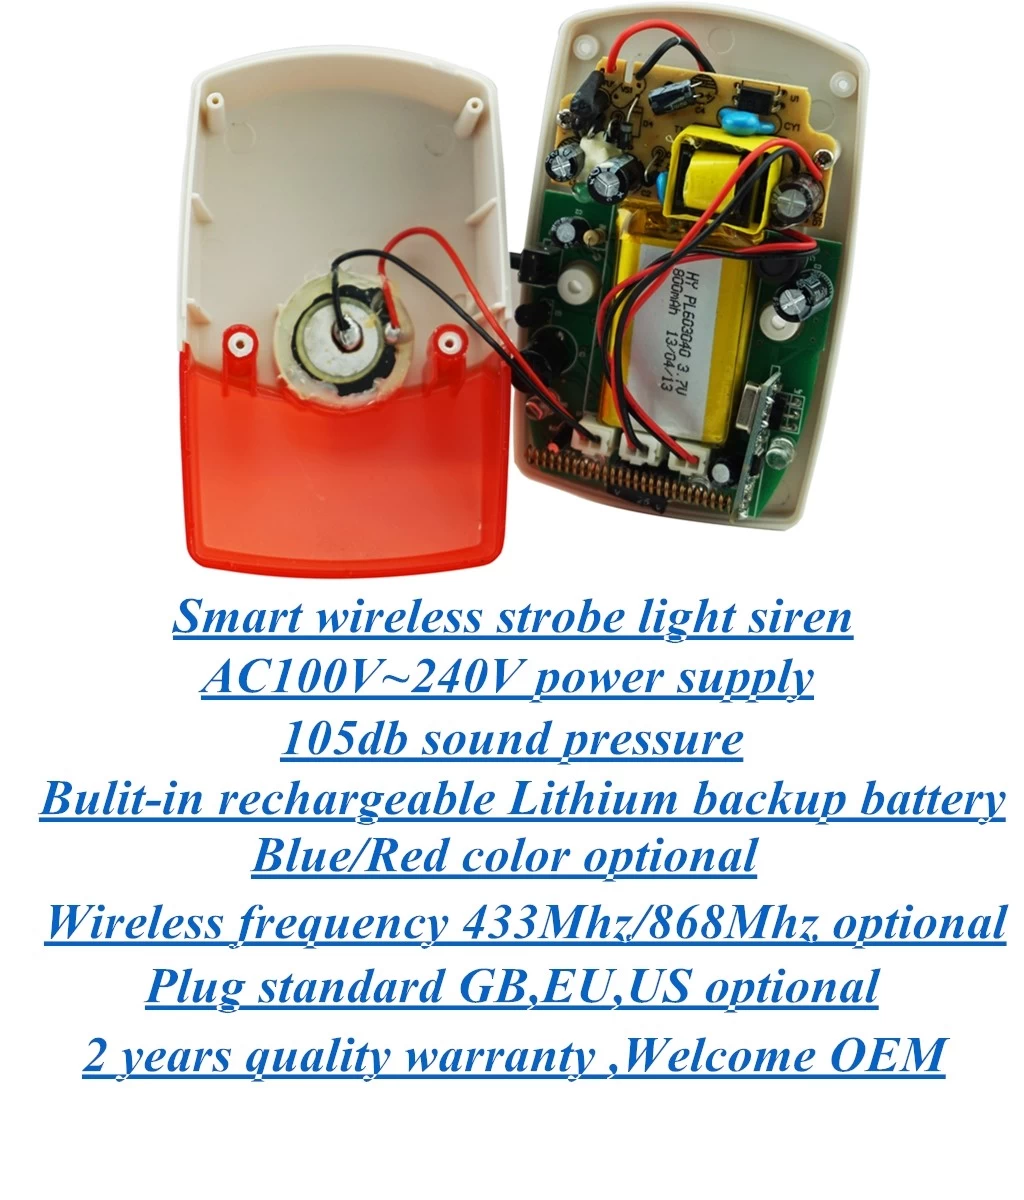 EB-161W-2,Wireless smart strobe siren,indoor wireless siren,wireless strobe light siren,Wireless siren,Wireless alarming siren,wireless home alarm siren